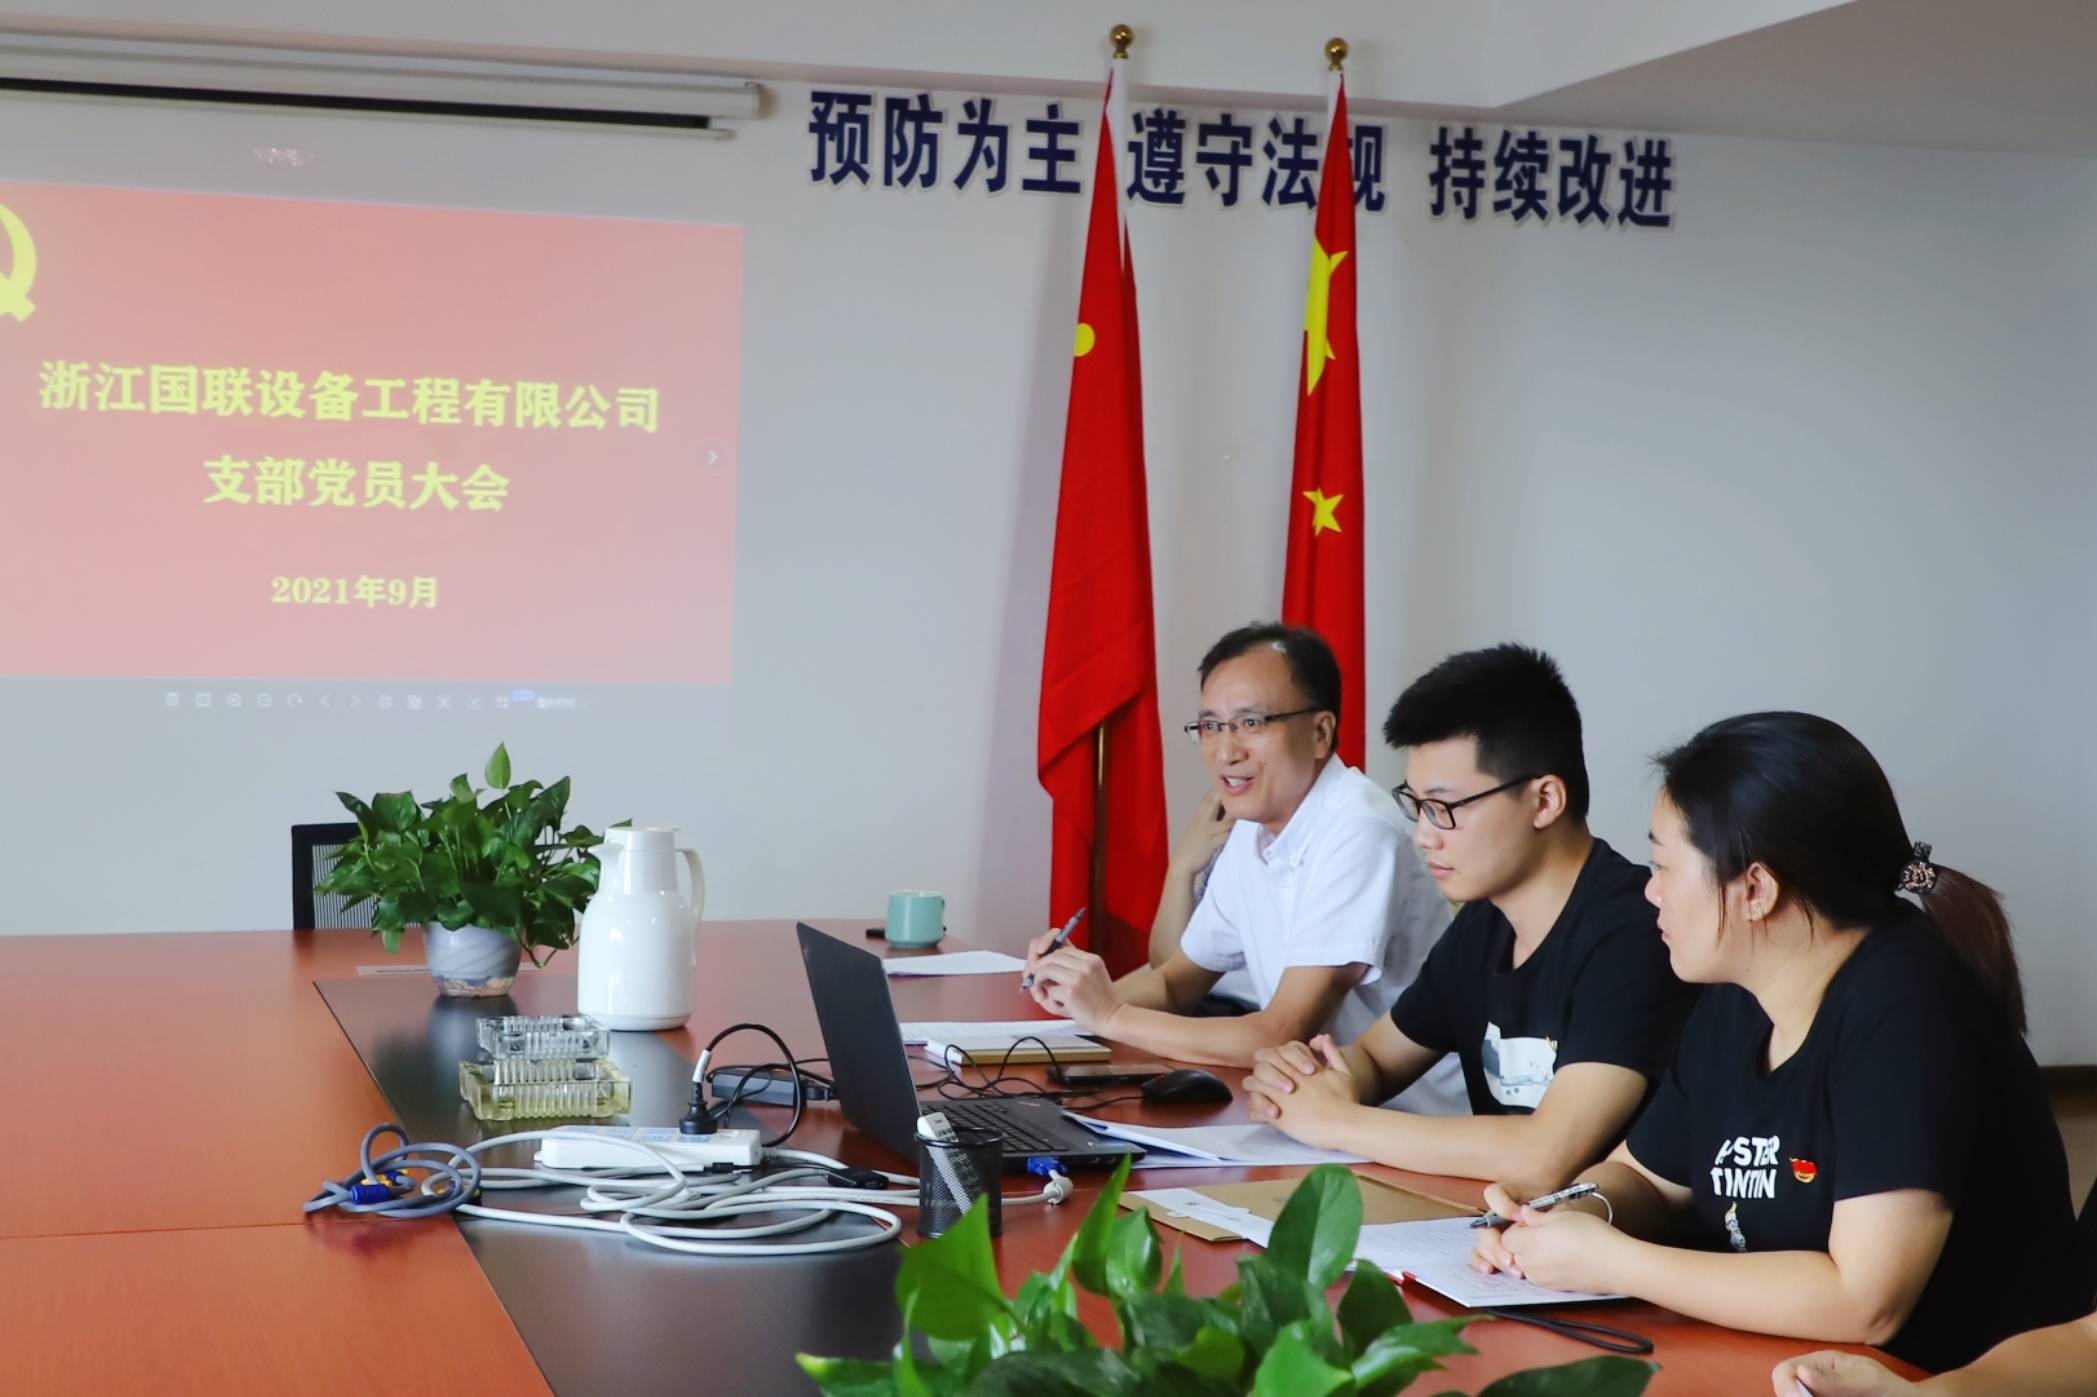 中共浙江国联设备工程有限公司支部委员会正式成立暨第一次党员大会顺利召开